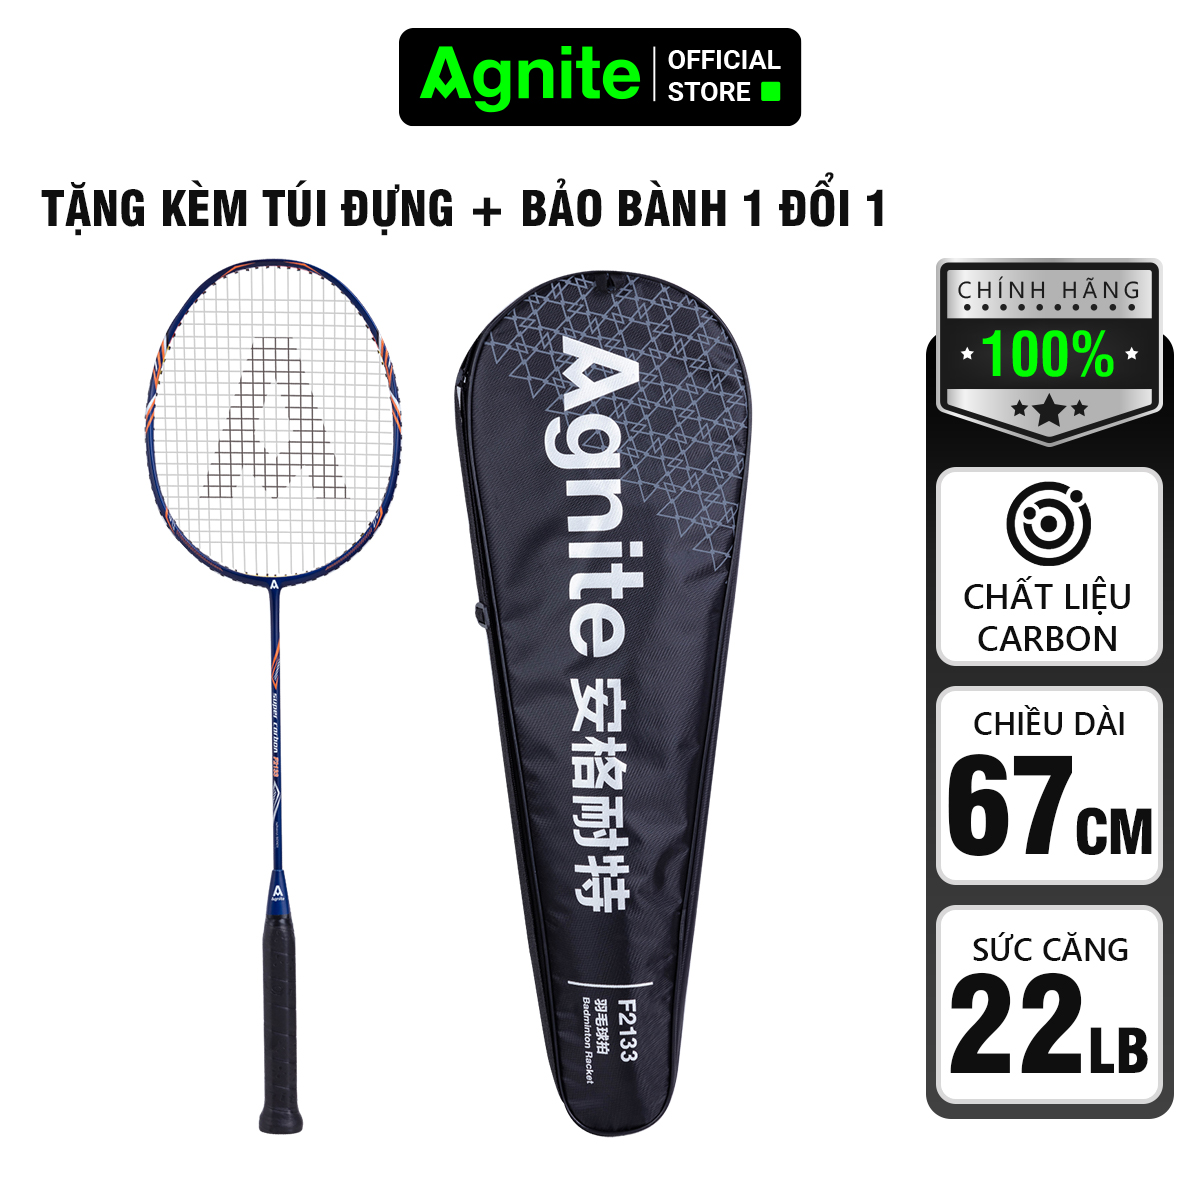 Vợt cầu lông cán liền Agnite tặng kèm túi đựng vợt - 1 chiếc - F2133